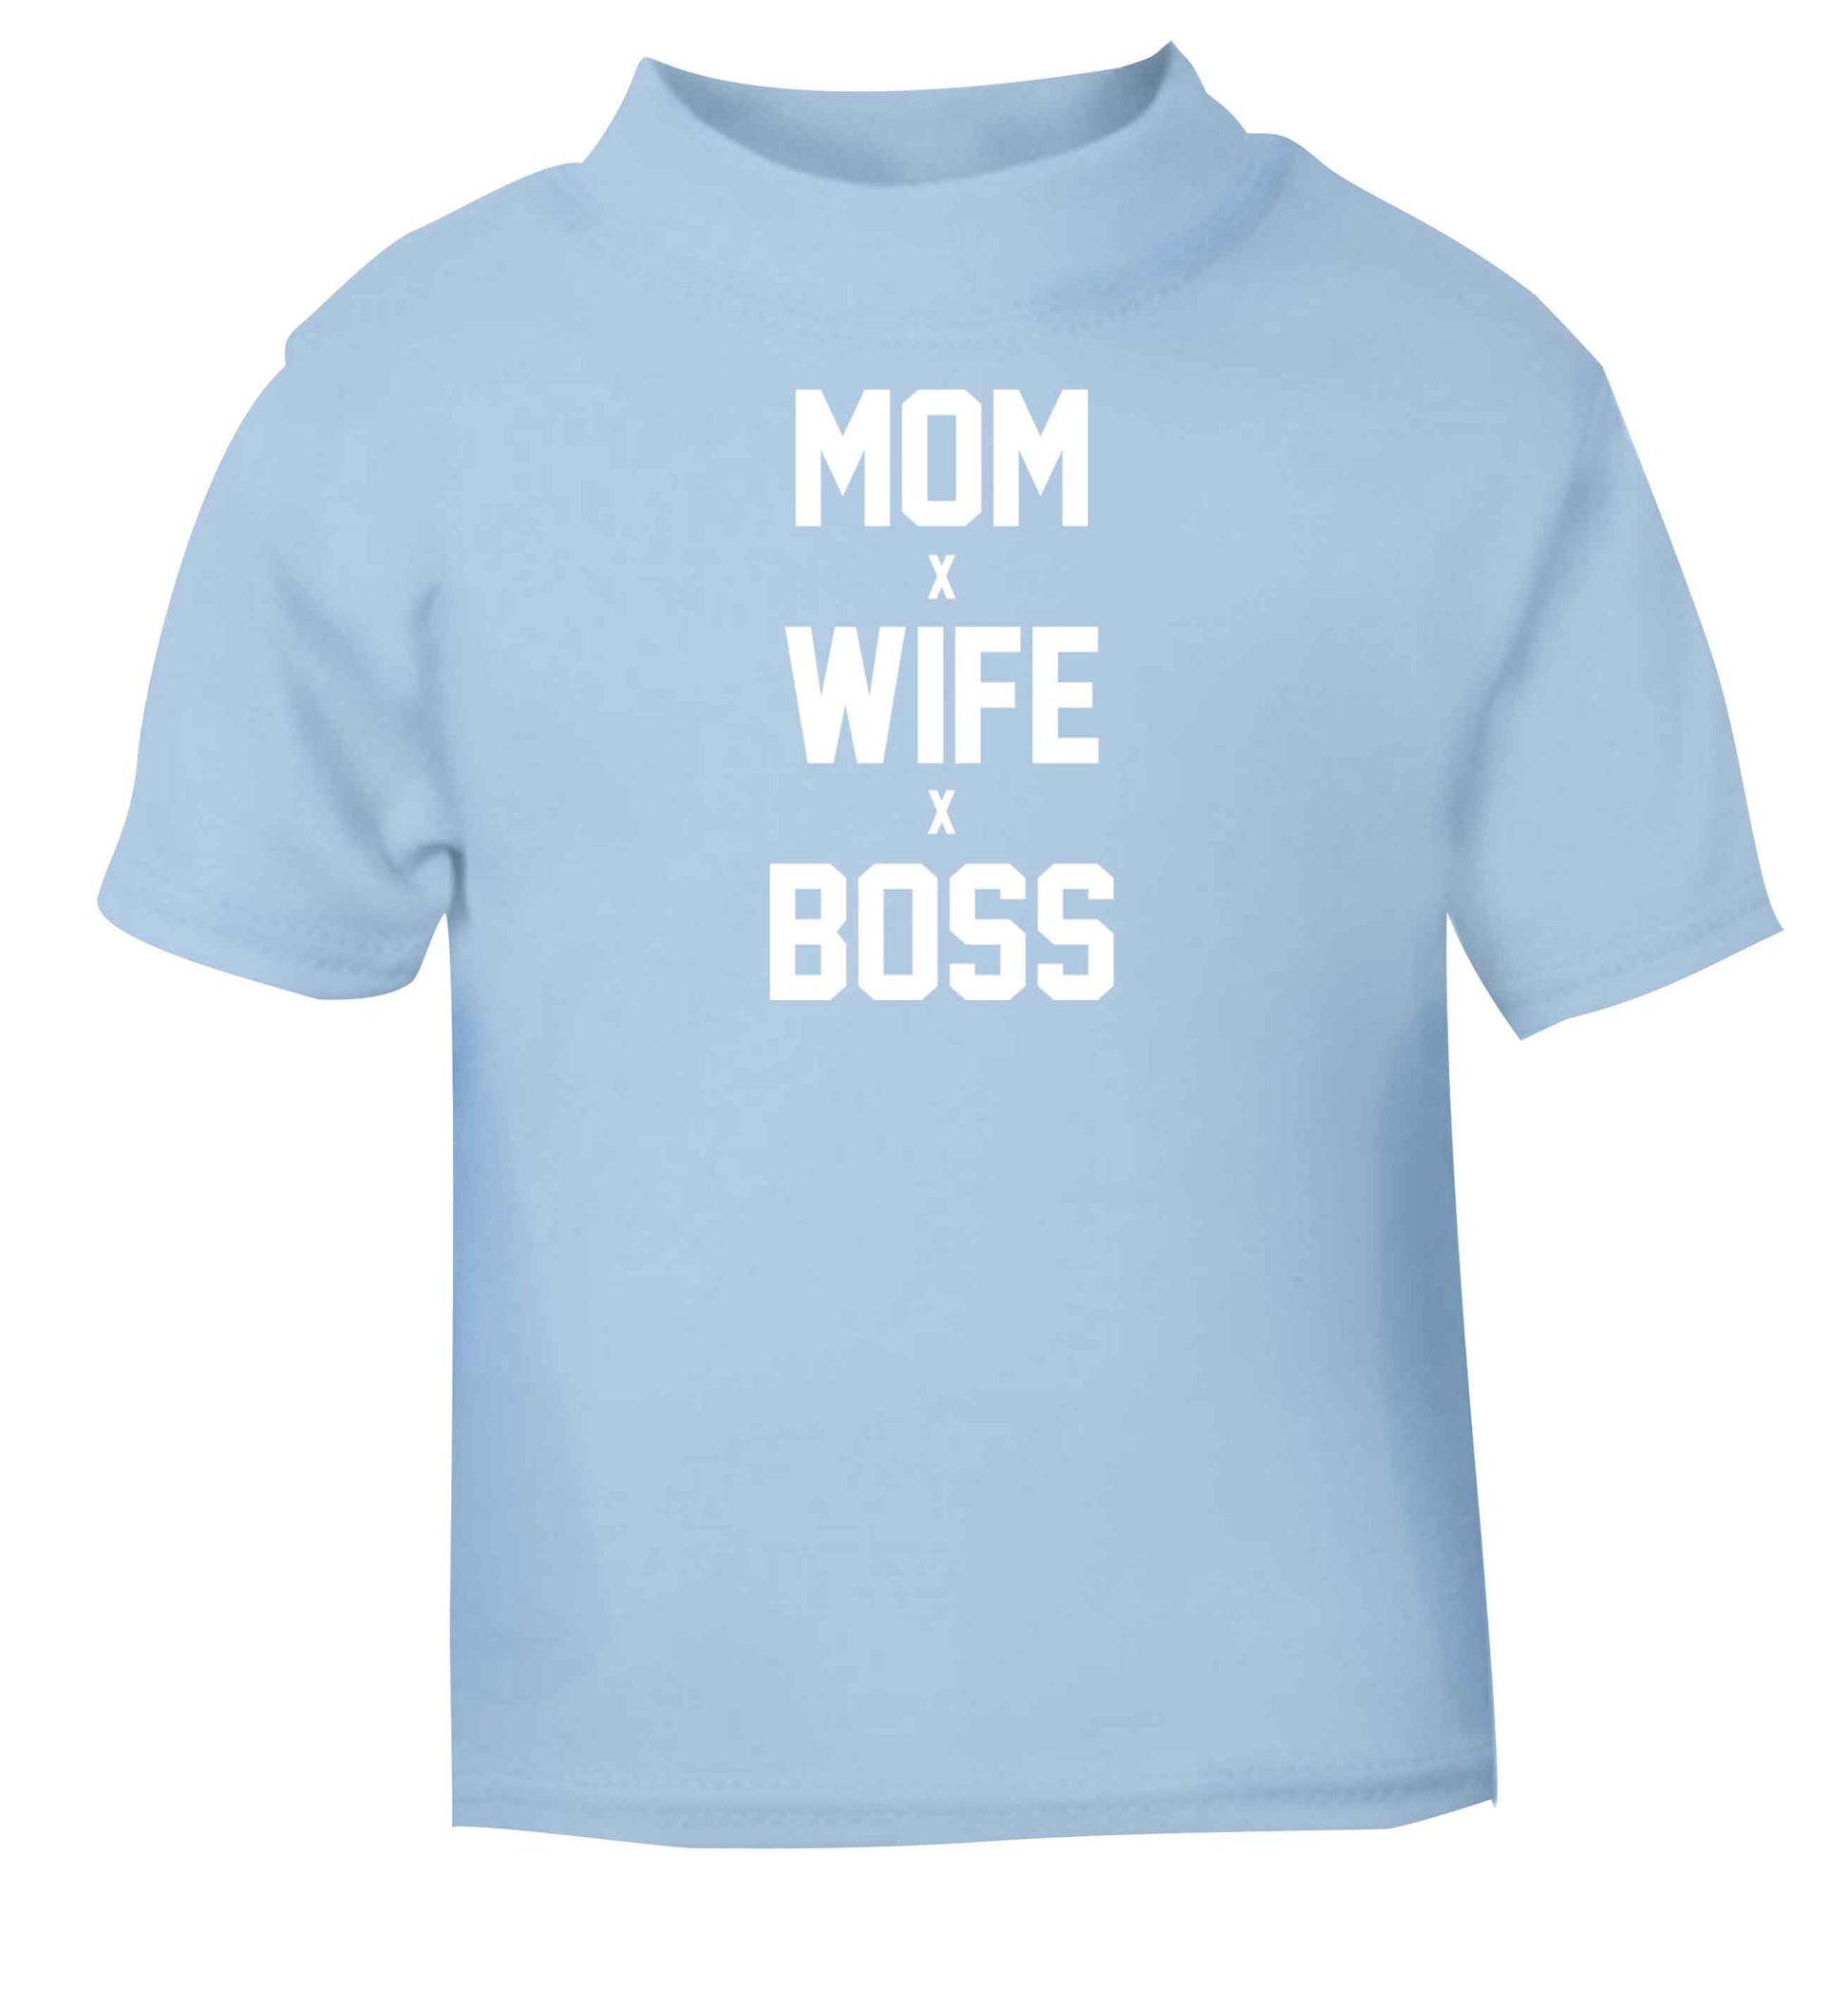 Mum wife boss light blue baby toddler Tshirt 2 Years